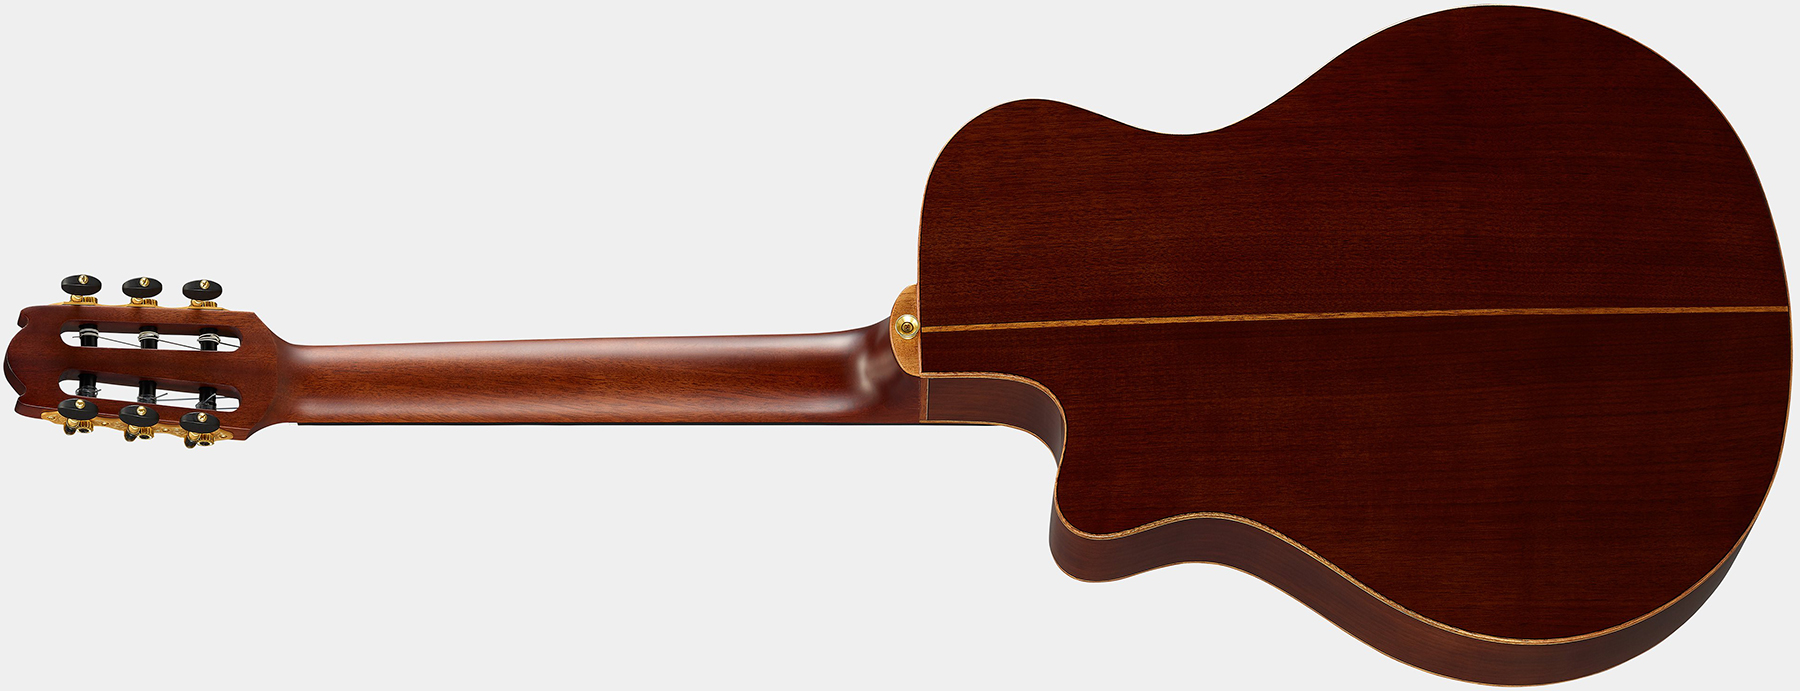 Yamaha Ntx3 4/4 Cw Epicea Noyer Eb - Brown Sunburst - Guitare Classique Format 4/4 - Variation 1